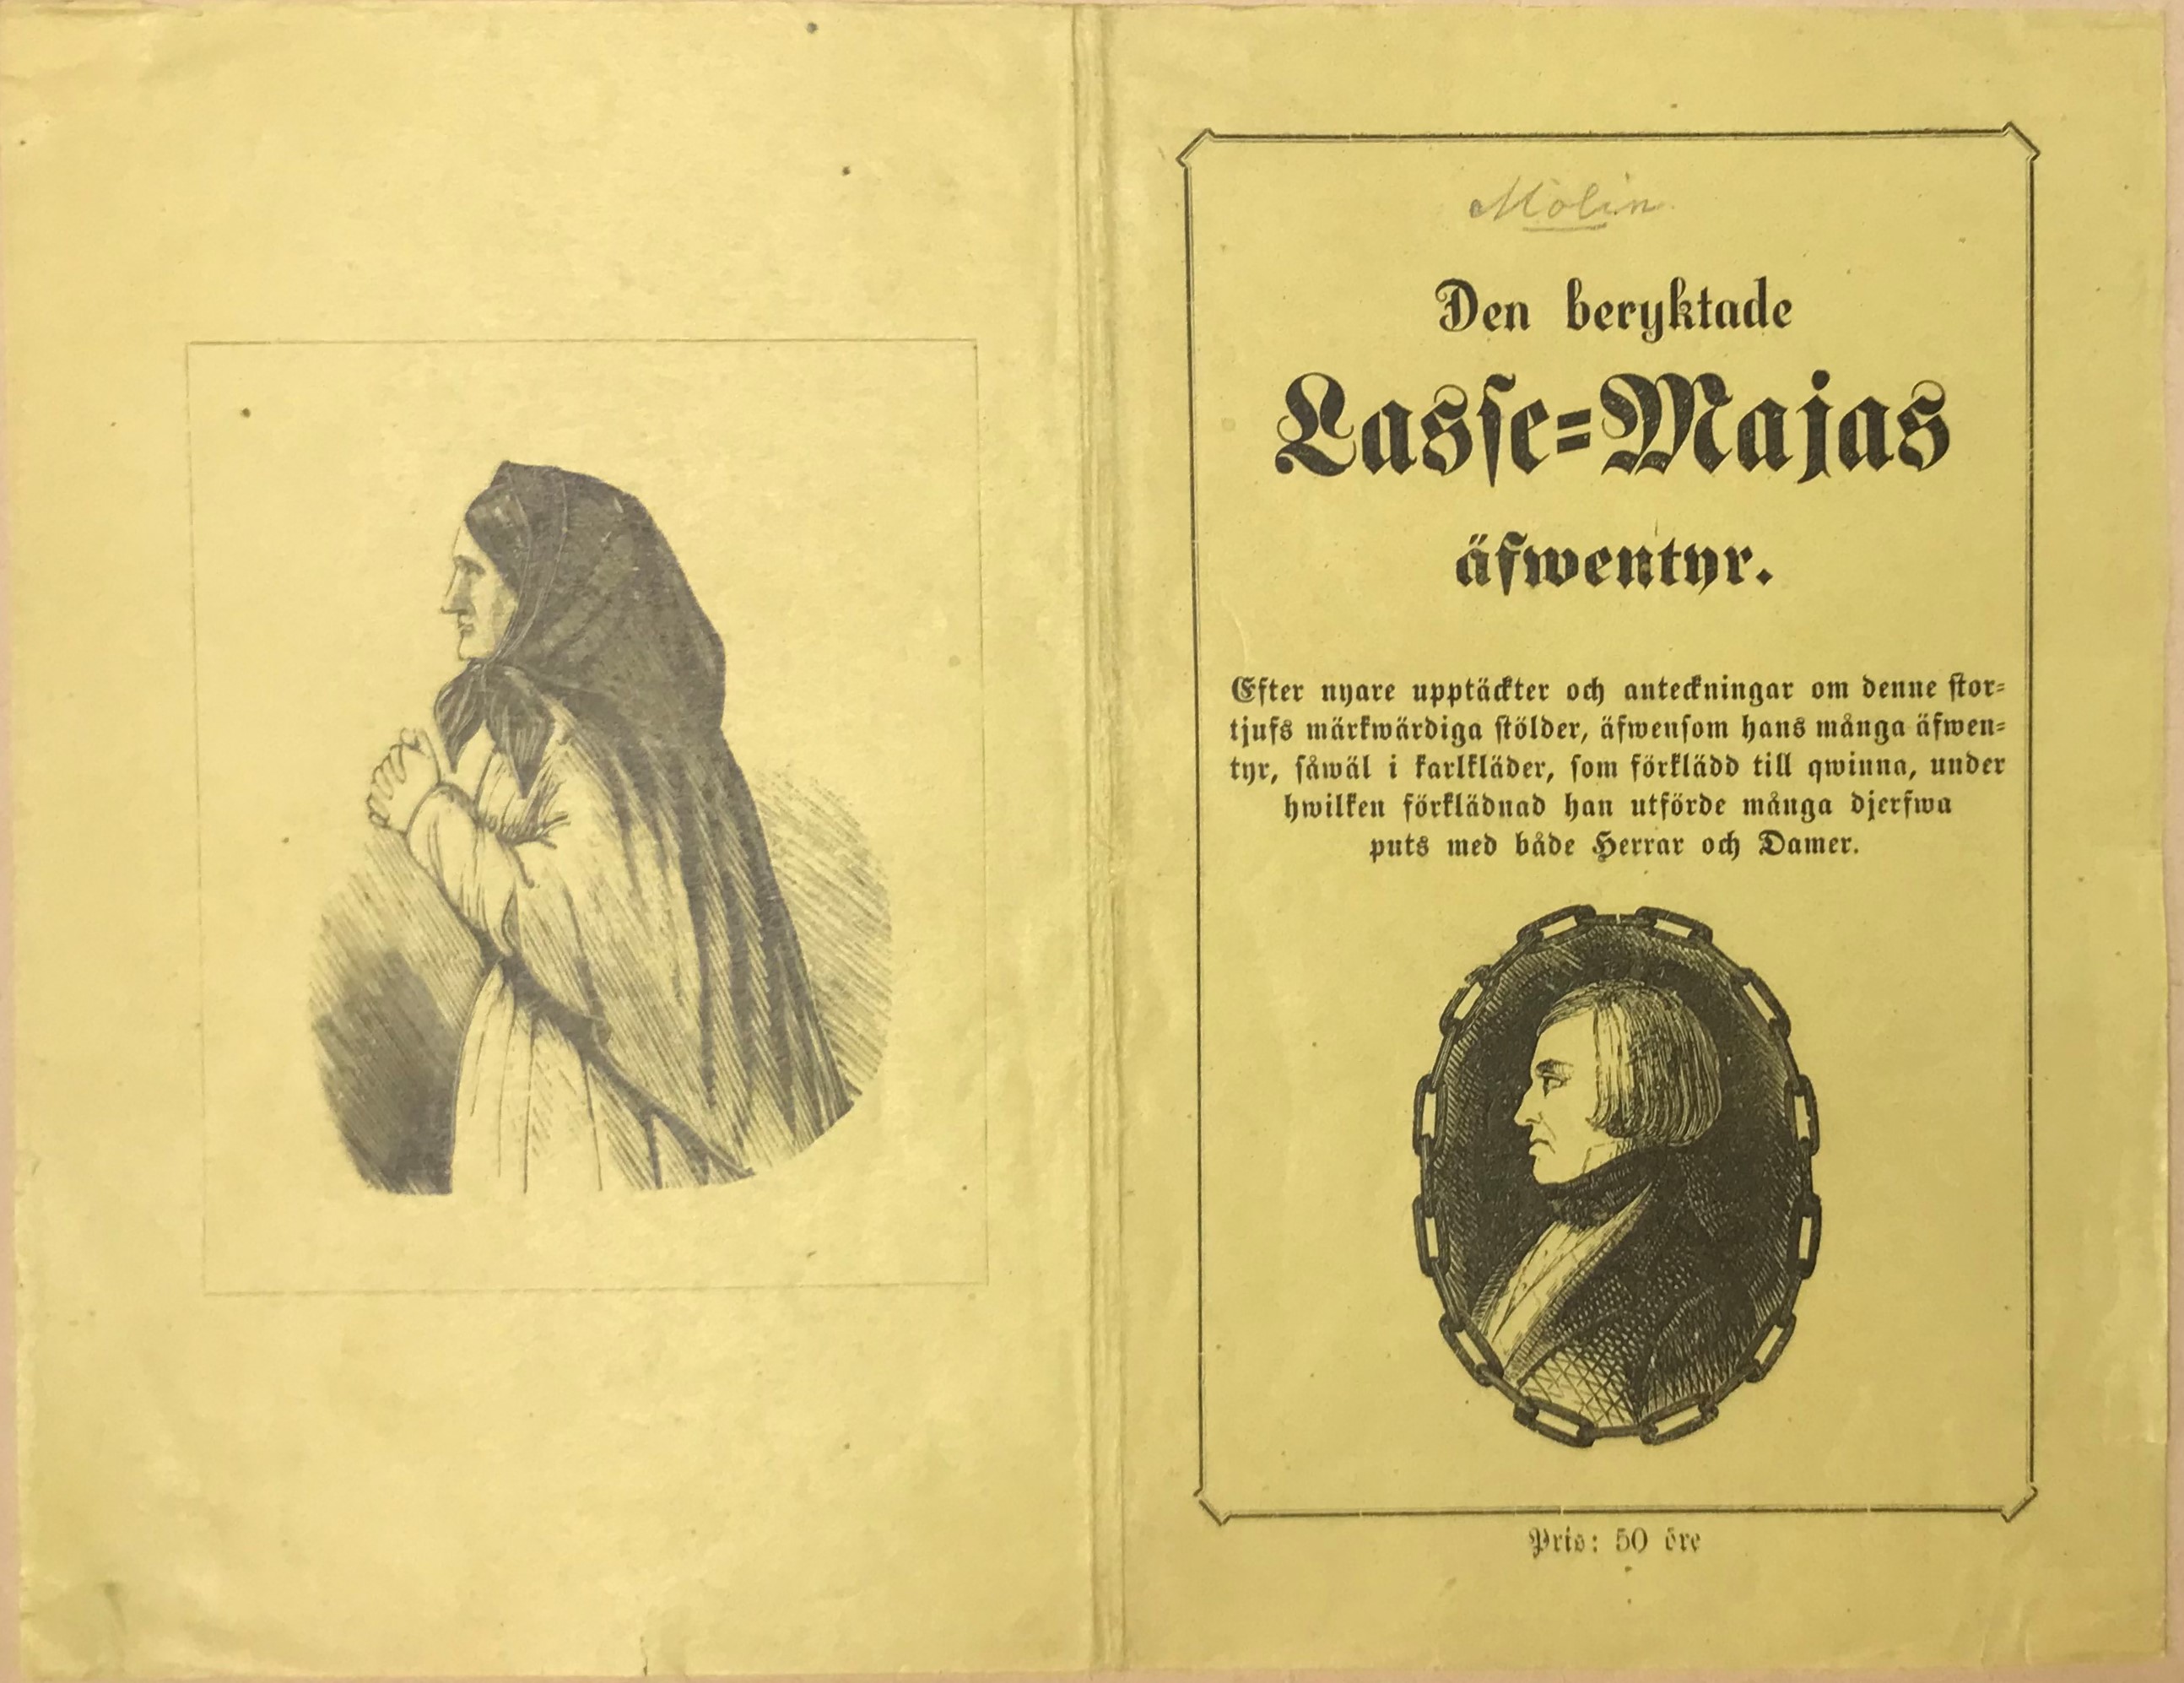 Uppvikt omslag till en broschyr tryckt på gult papper. Till vänster syns en bild av en man i kvinnokläder och huckle, till höger en lång tryckt rubrik och ett porträtt av en man i profil innan för en oval ram i formen av en kedja.